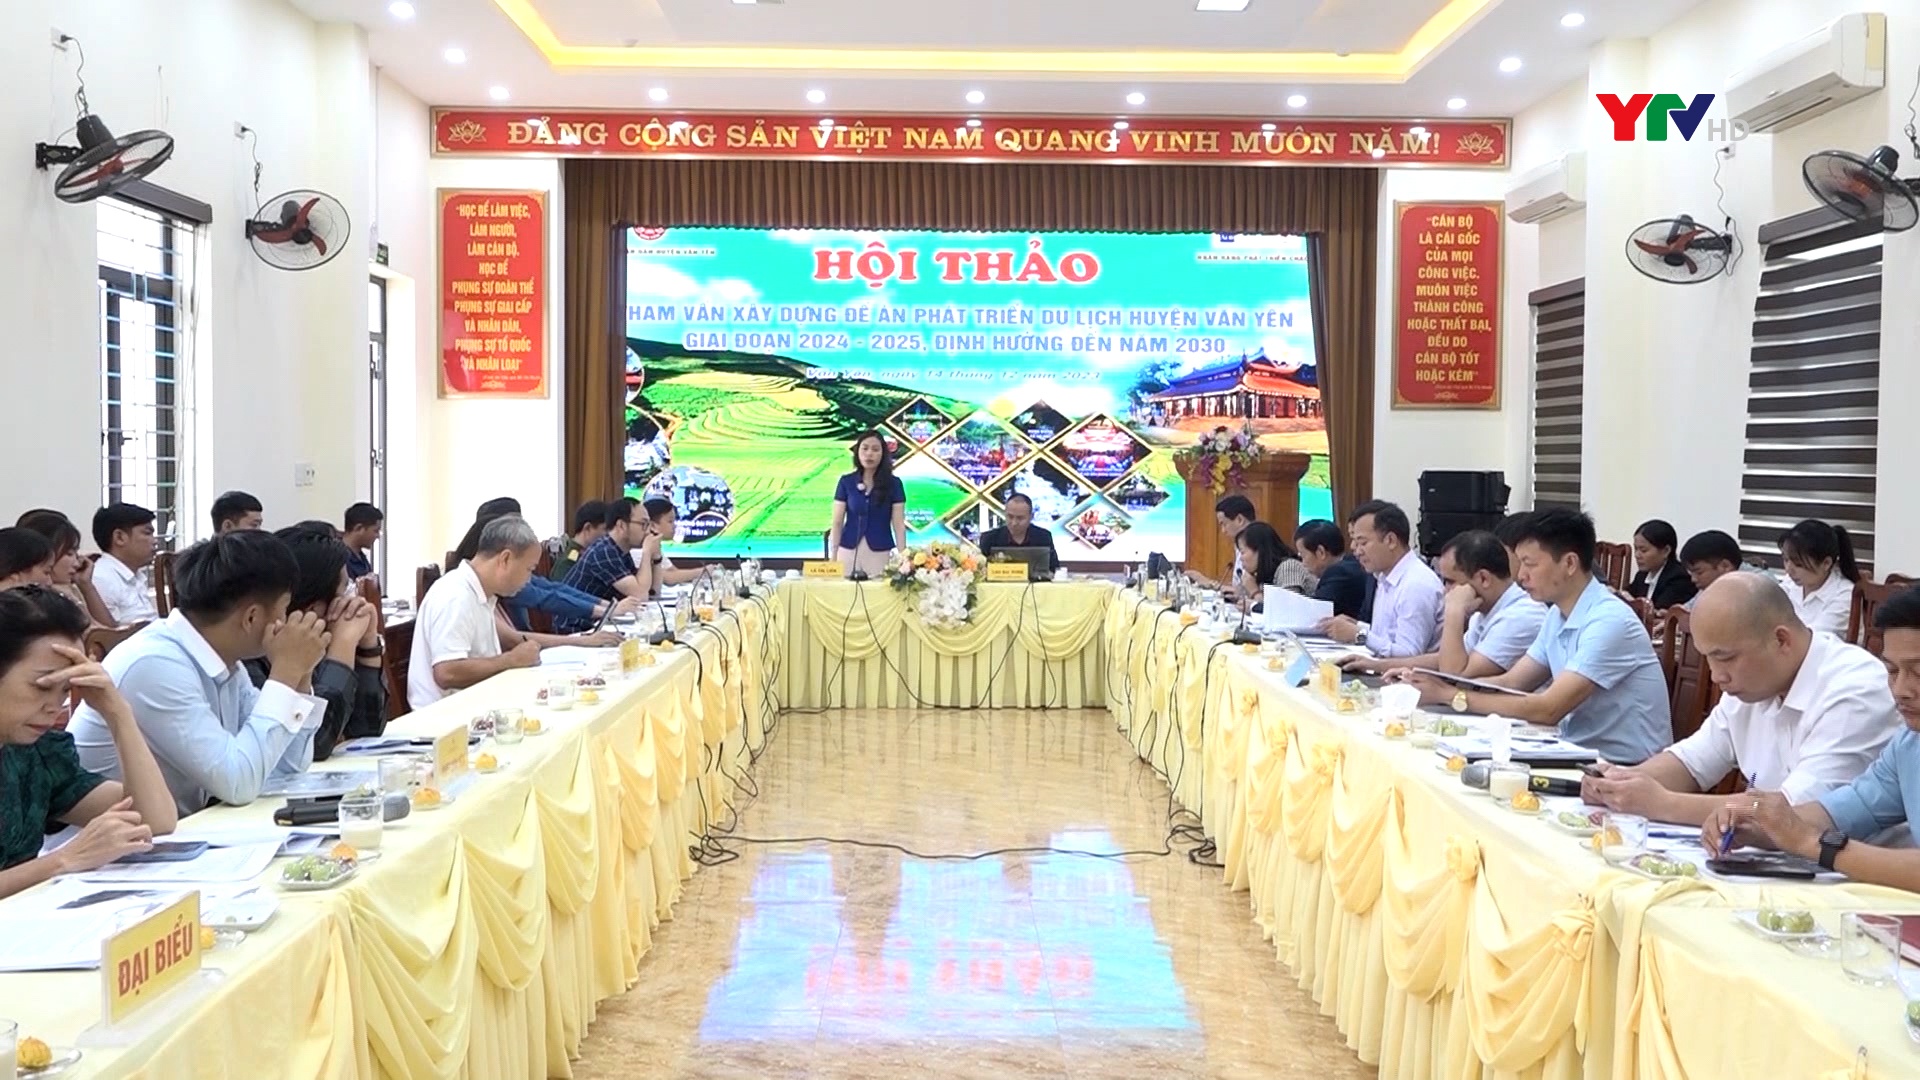 Hội thảo tham vấn xây dựng Đề án phát triển du lịch huyện Văn Yên giai đoạn 2024 - 2025, định hướng đến năm 2030